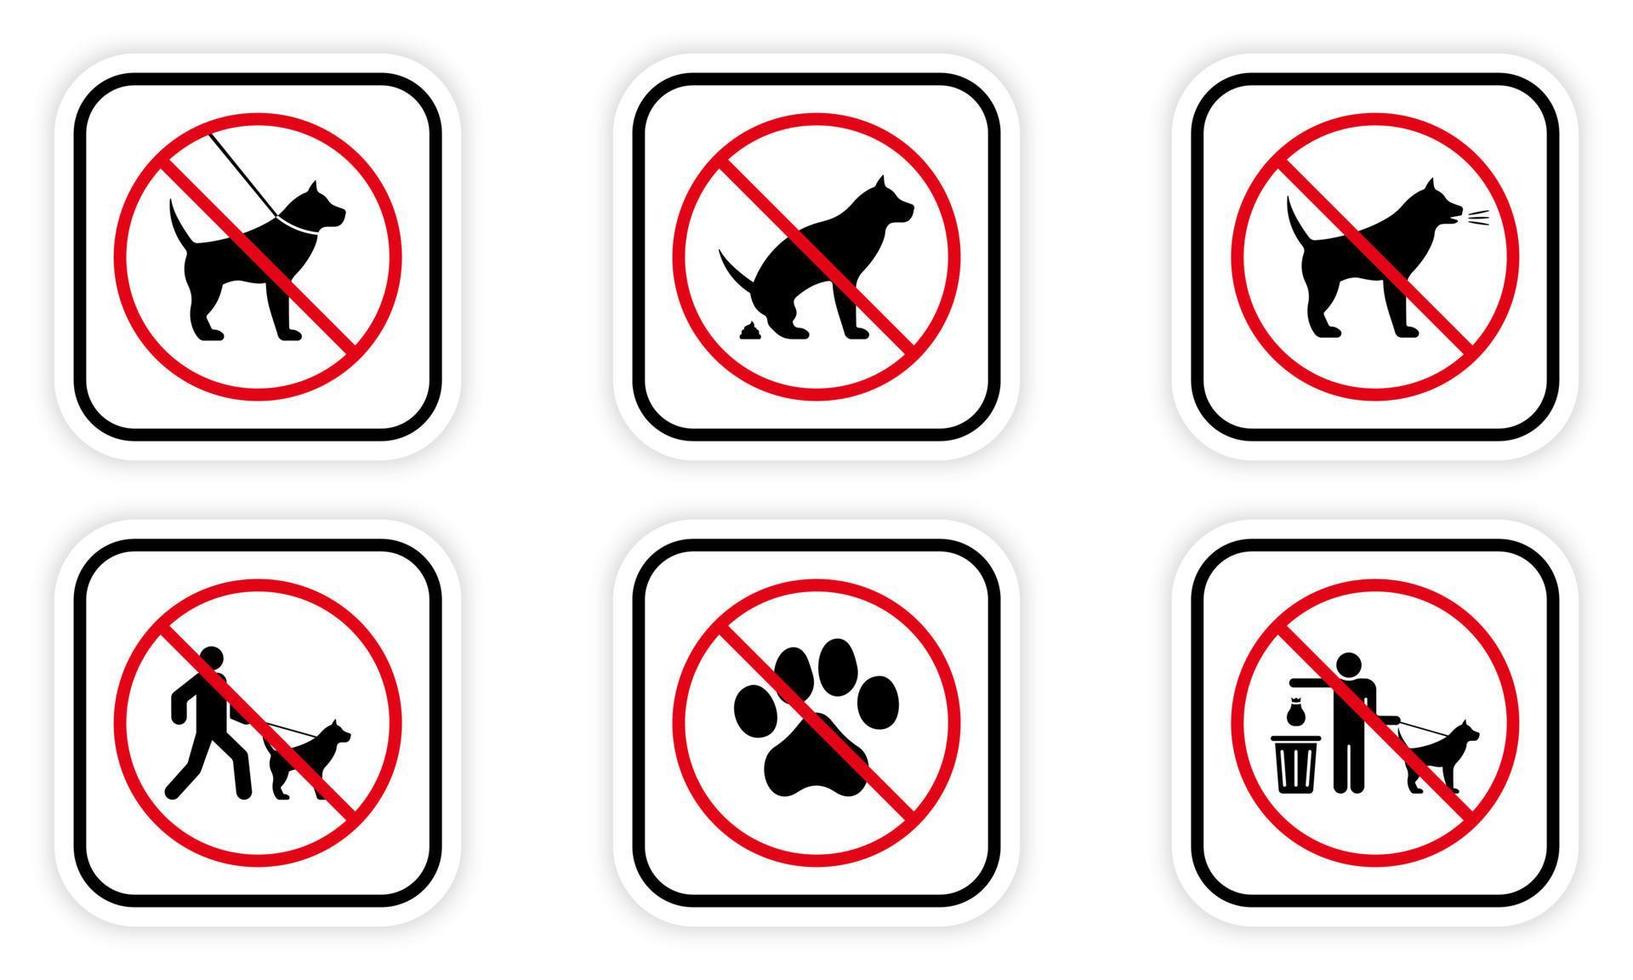 interdire le jeu d'icônes de silhouette noire de chien. interdire le pictogramme de marche d'entrée pour animaux de compagnie. symbole d'arrêt rouge de la zone de stationnement. pas de panneau de toilette pour animaux autorisé. canin interdit. nettoyer après caca de chien. illustration vectorielle isolée. vecteur